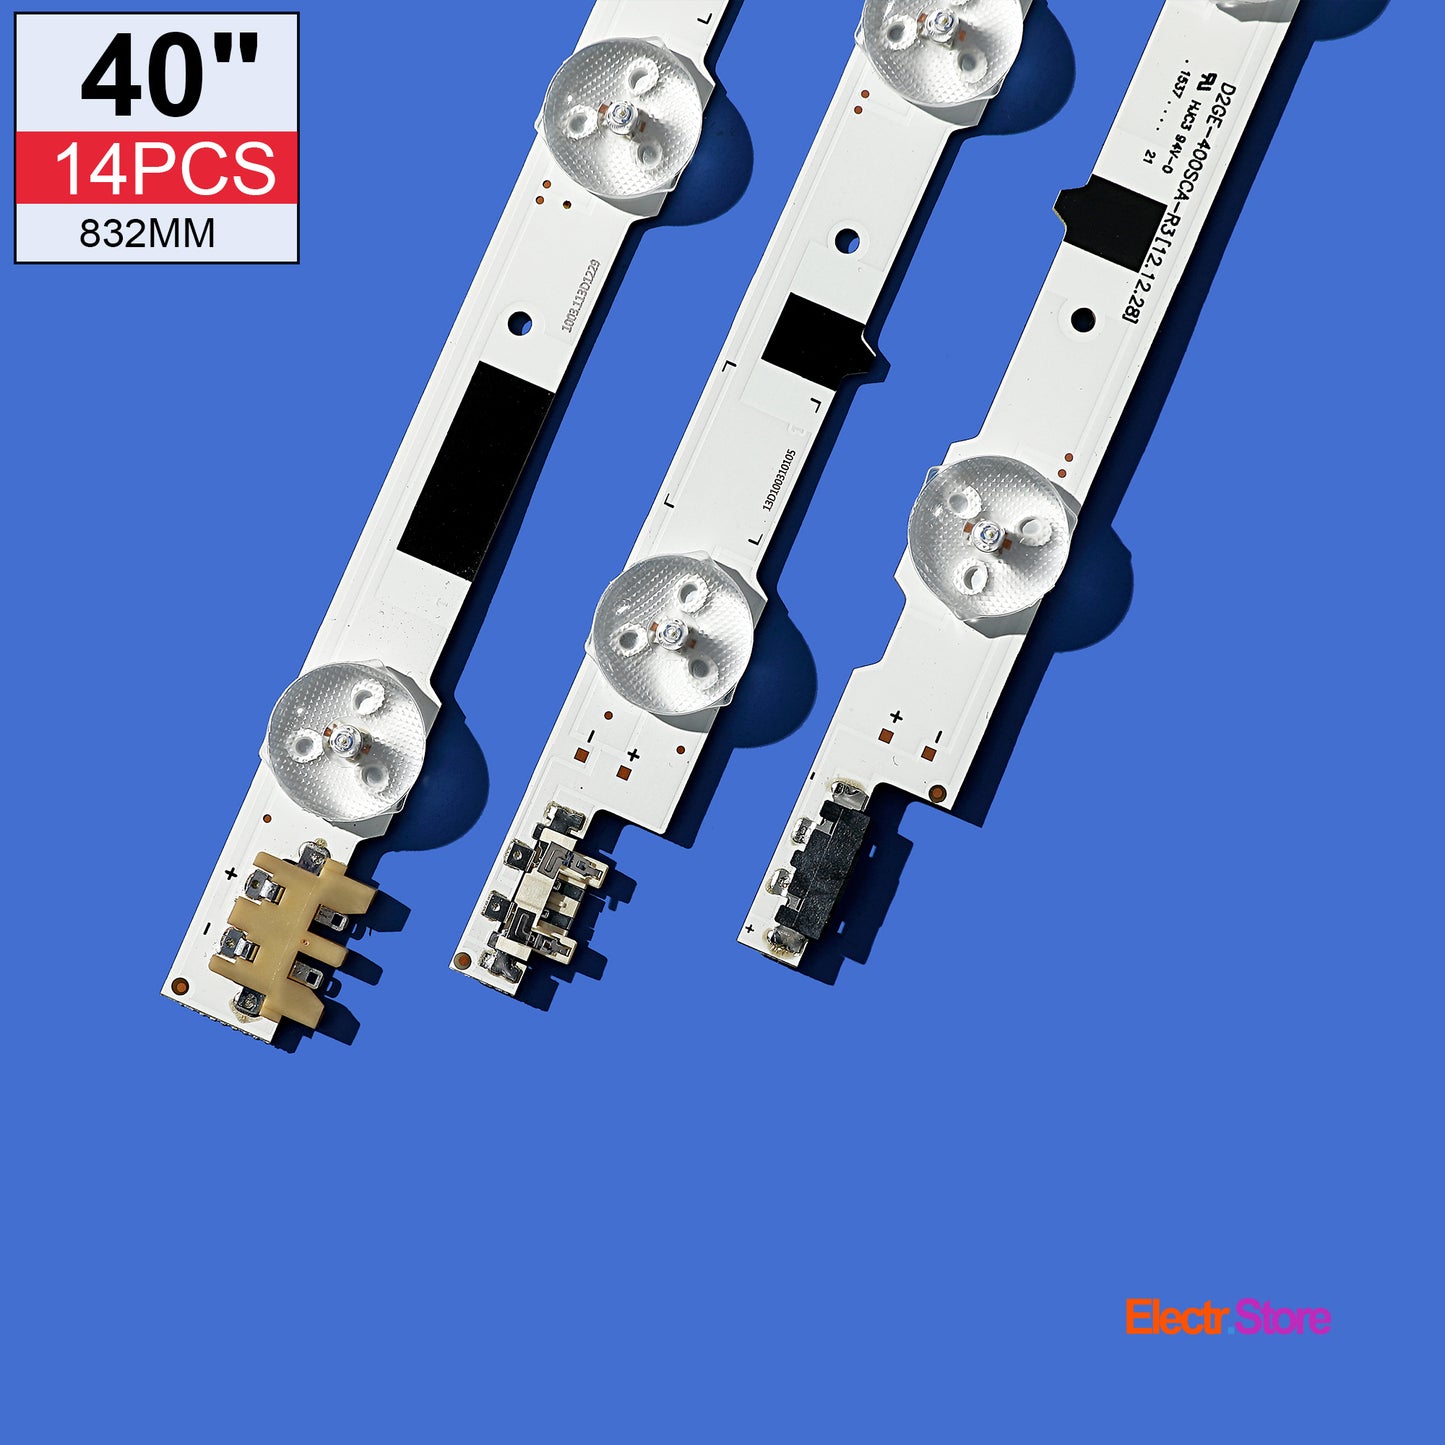 LED Backlight Strip Kits, 2013SVS40F, D2GE-400SCA-R3/D2GE-400SCB-R3, BN96-25304A/BN96-25305A (14 pc/kit), for TV 40" 40" D2GE-400SCA-R3 D2GE-400SCB-R3 LED Backlights Samsung Electr.Store